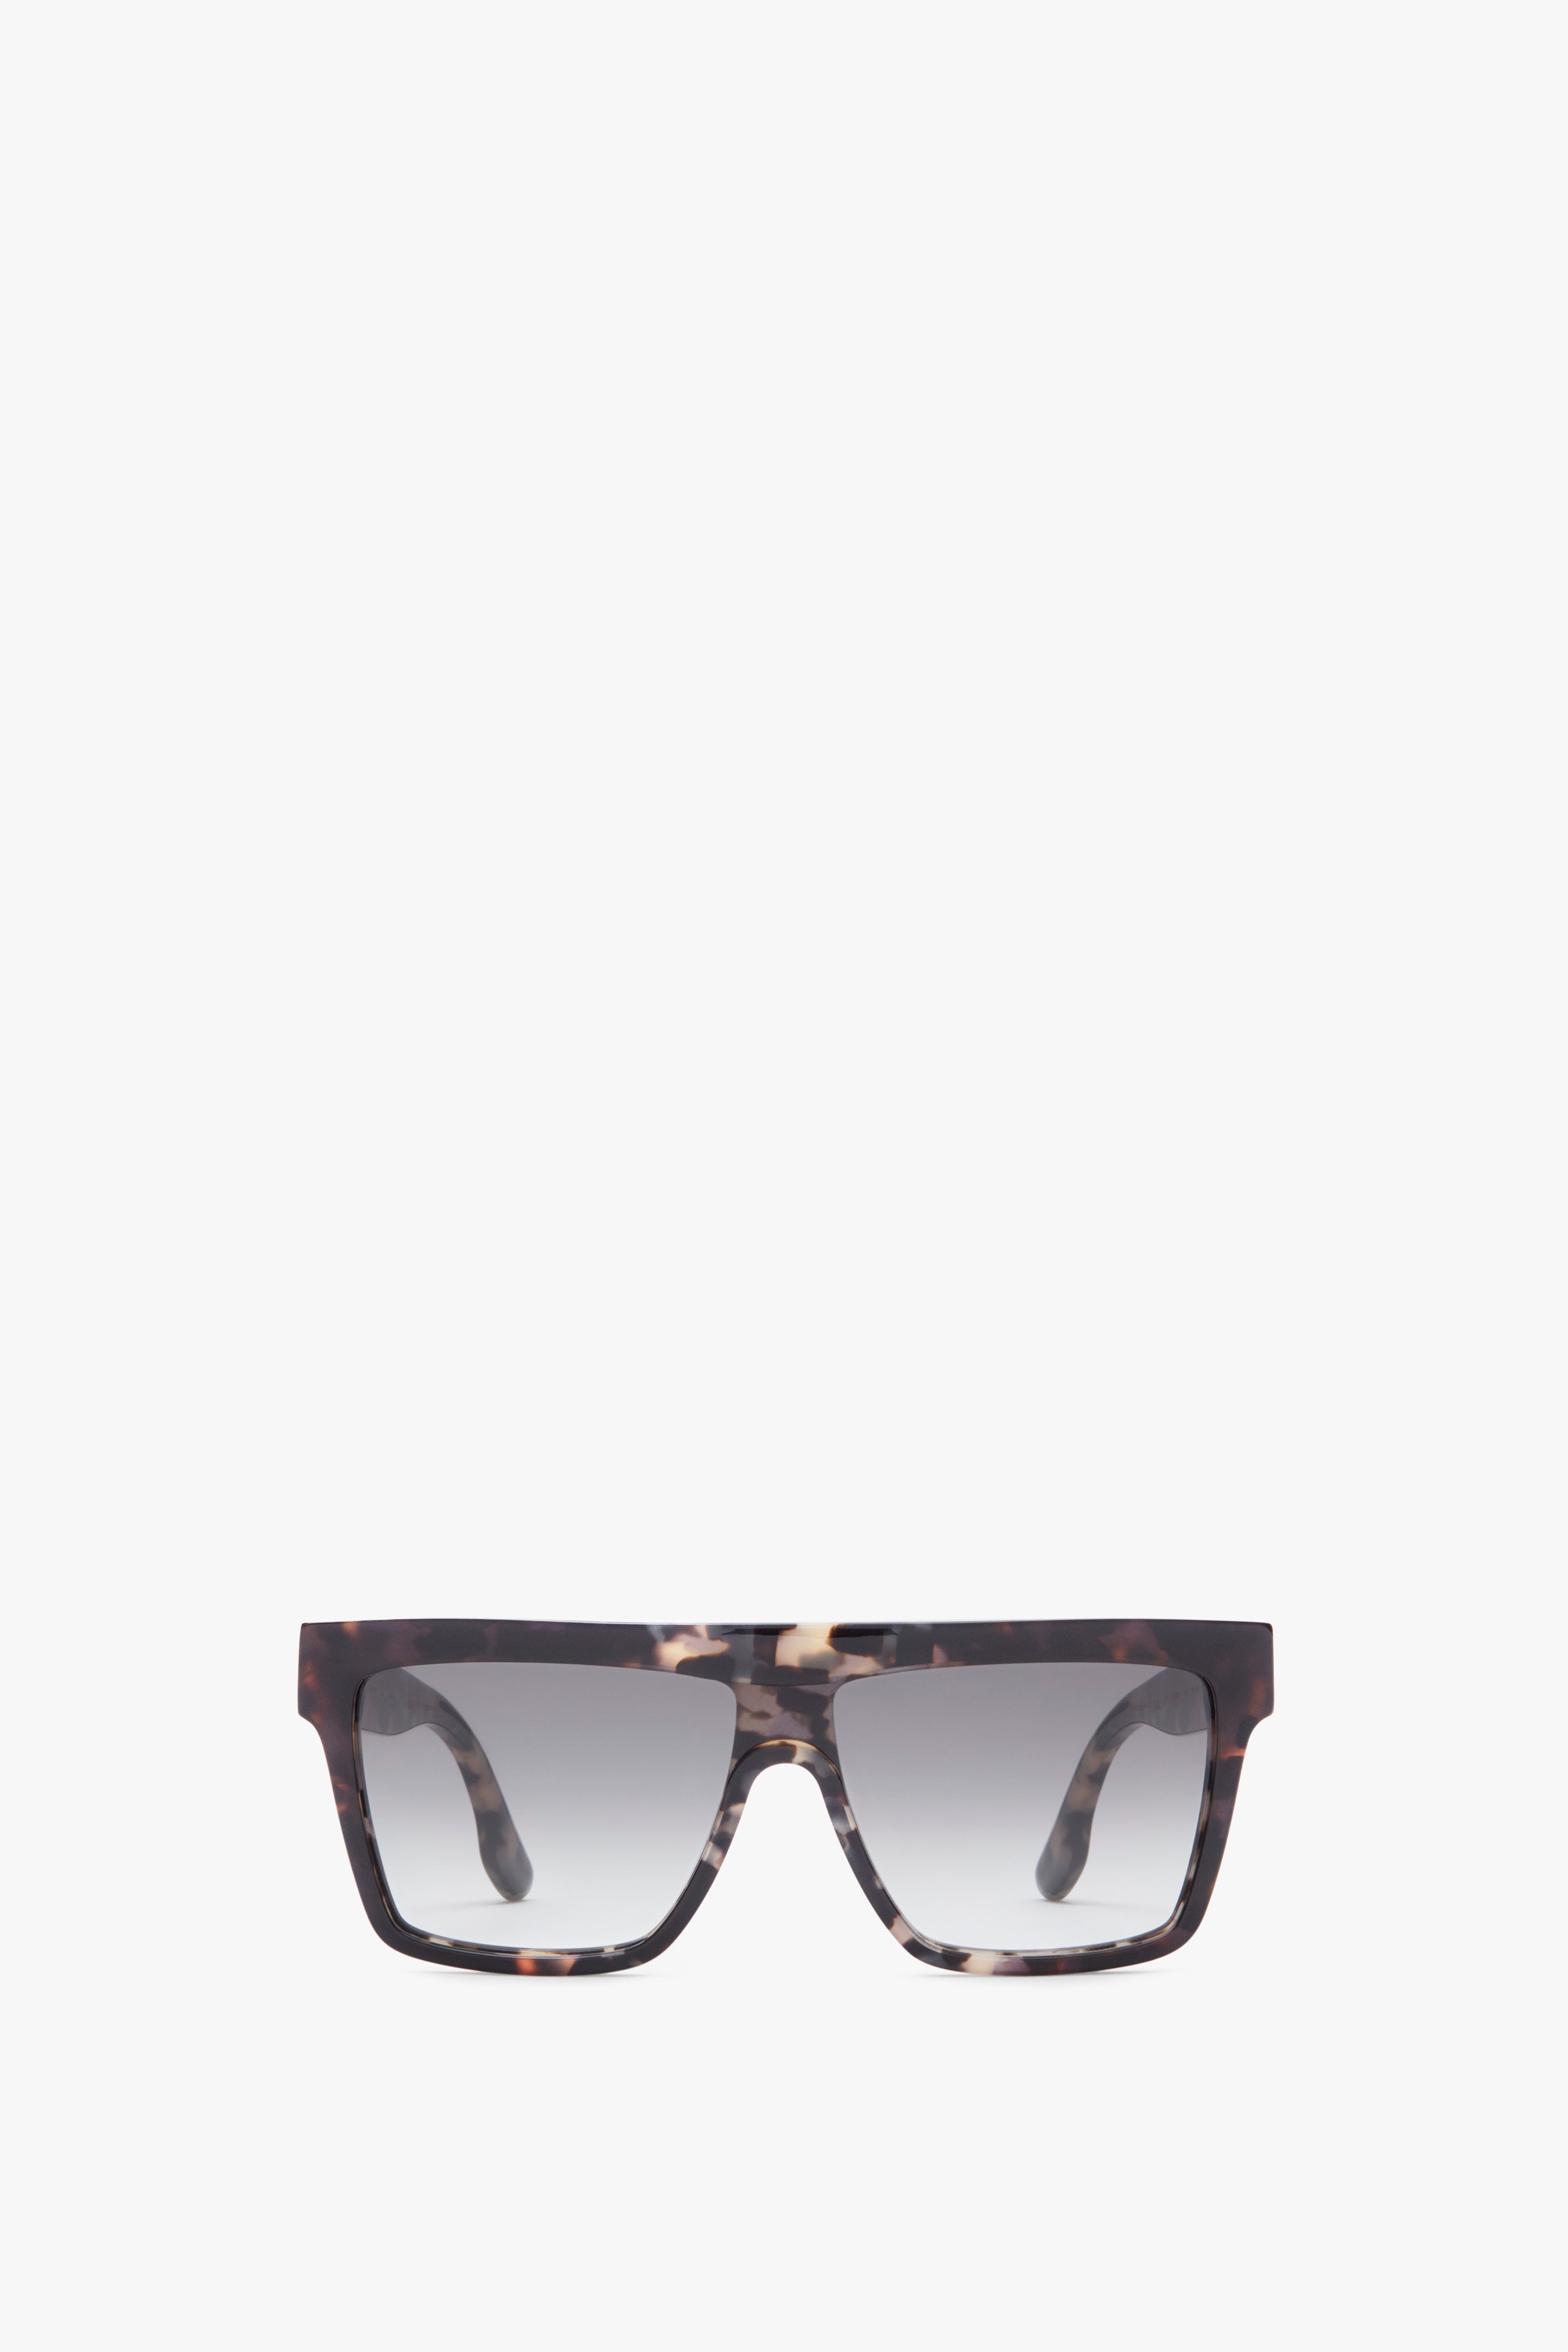 Chanel Black Sunglasses For Women